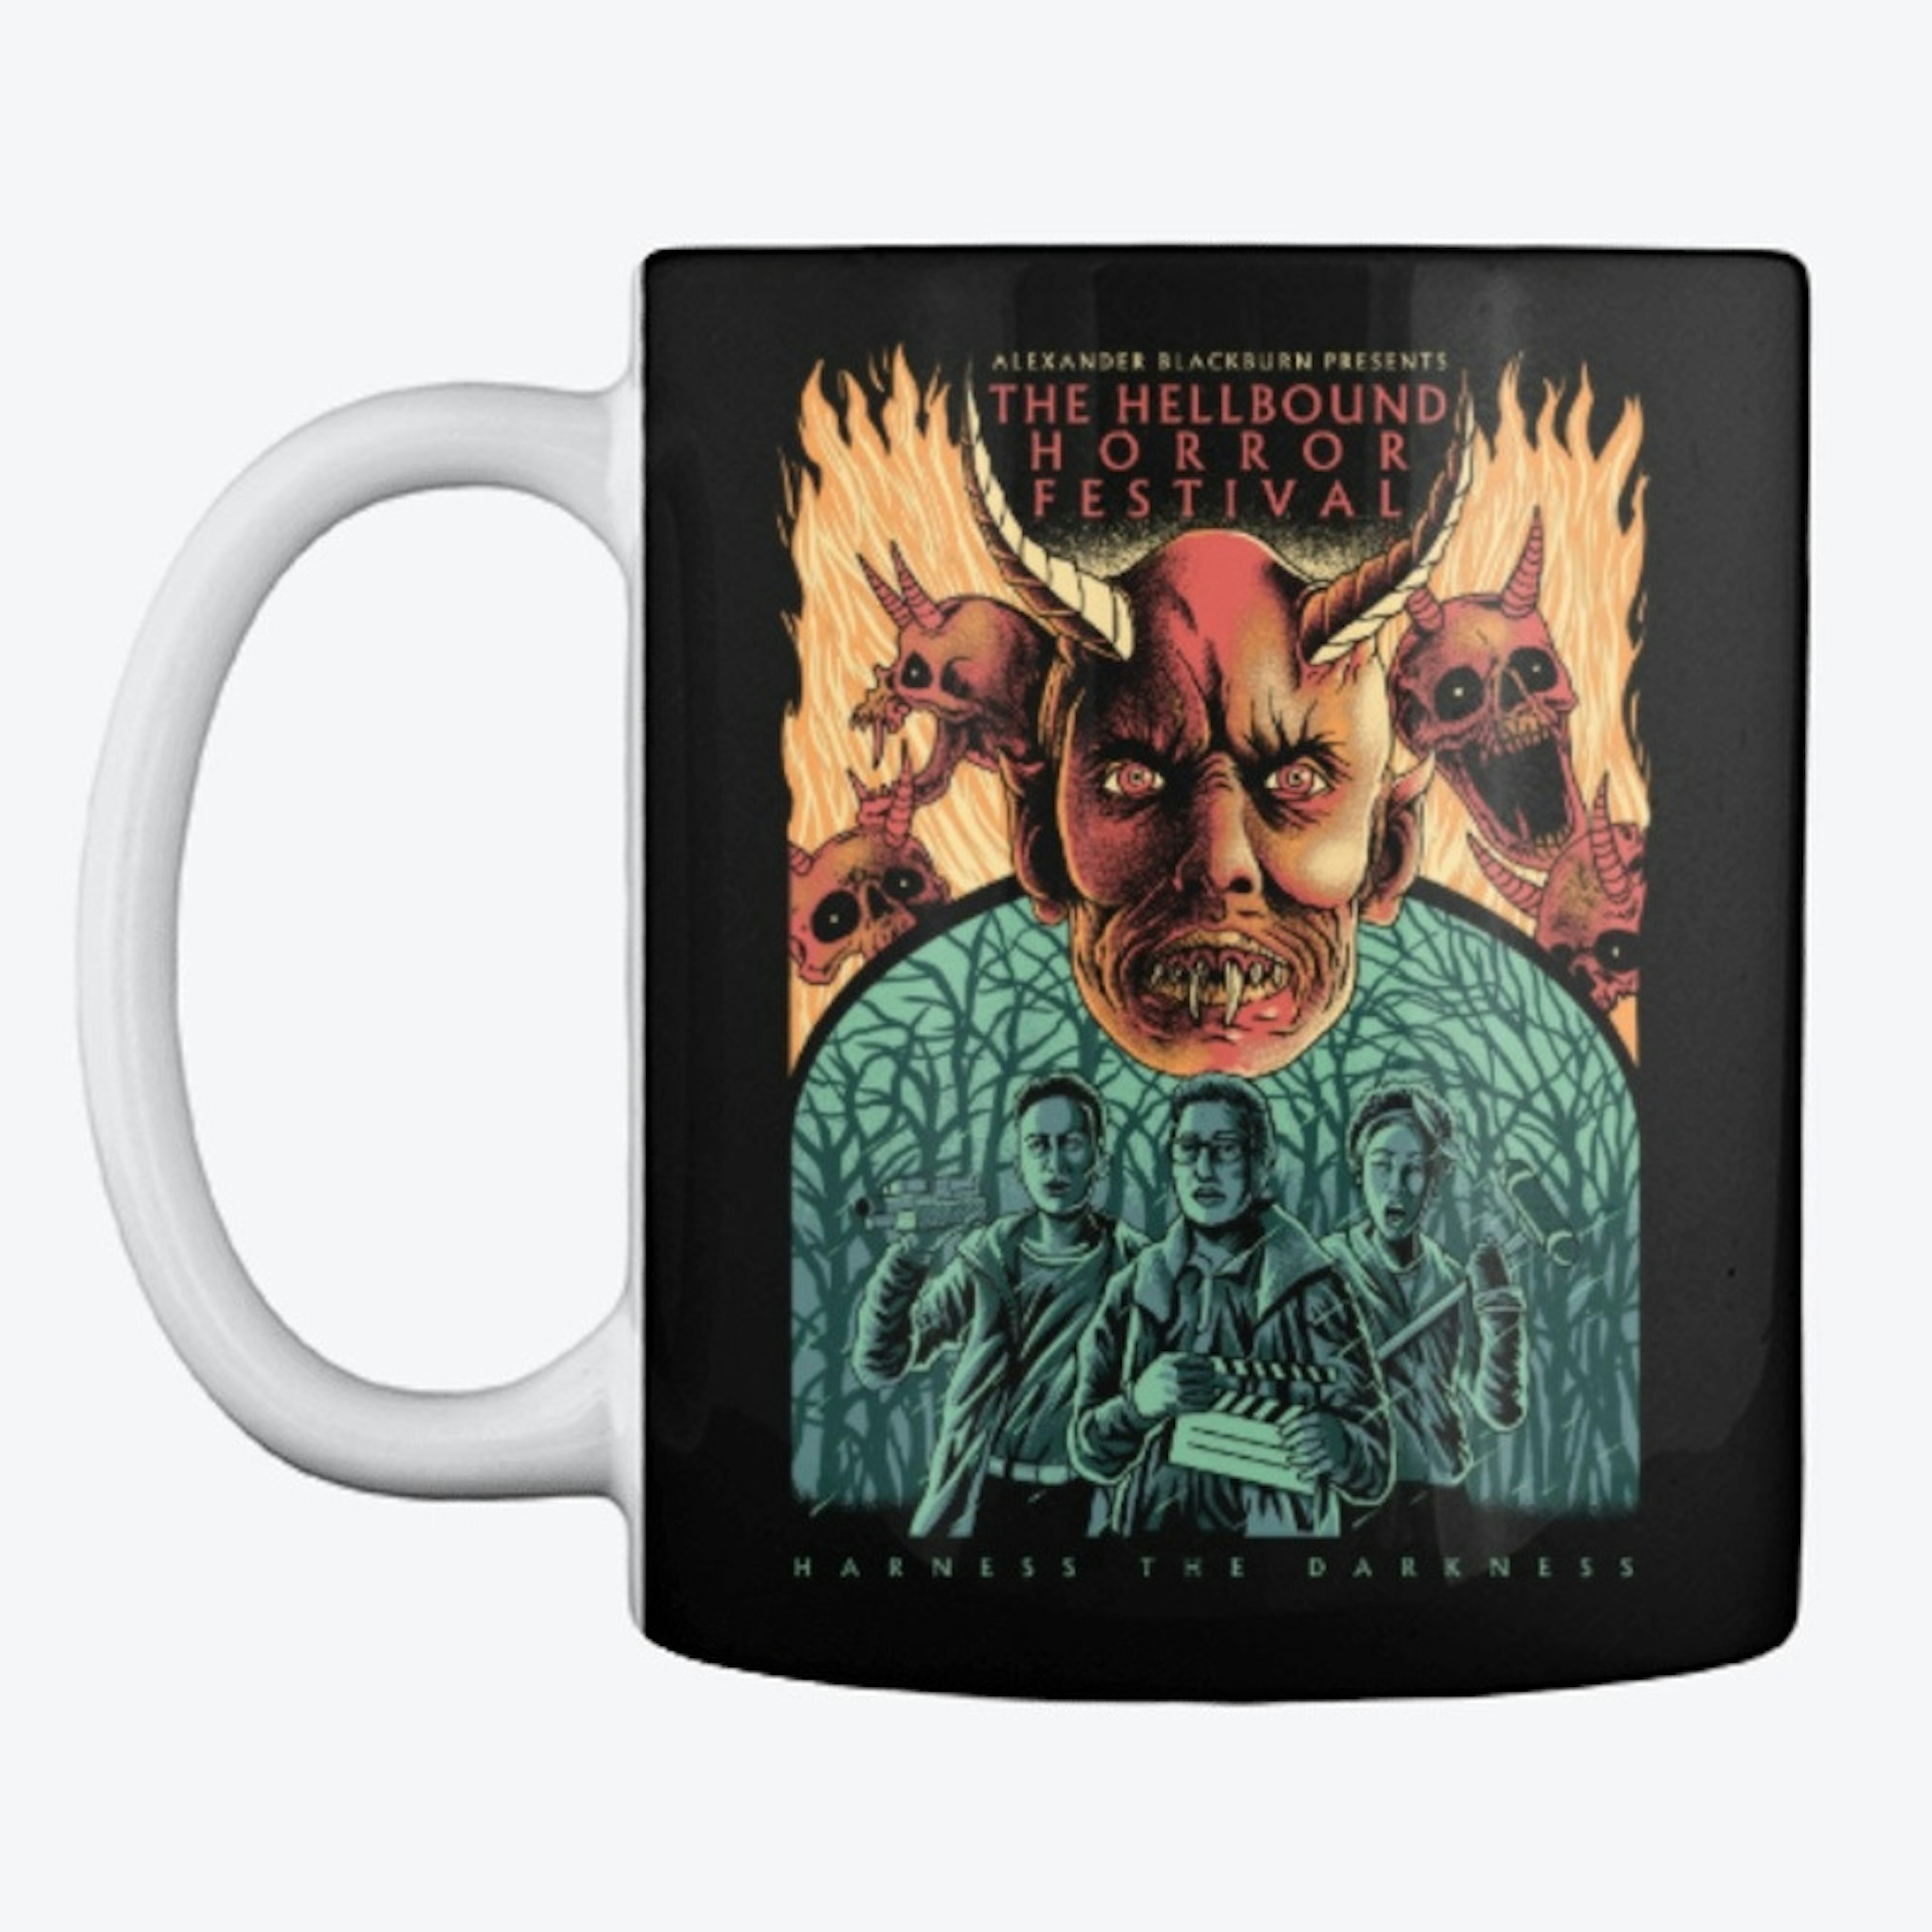 Hellbound Horror Limited Edition Mug